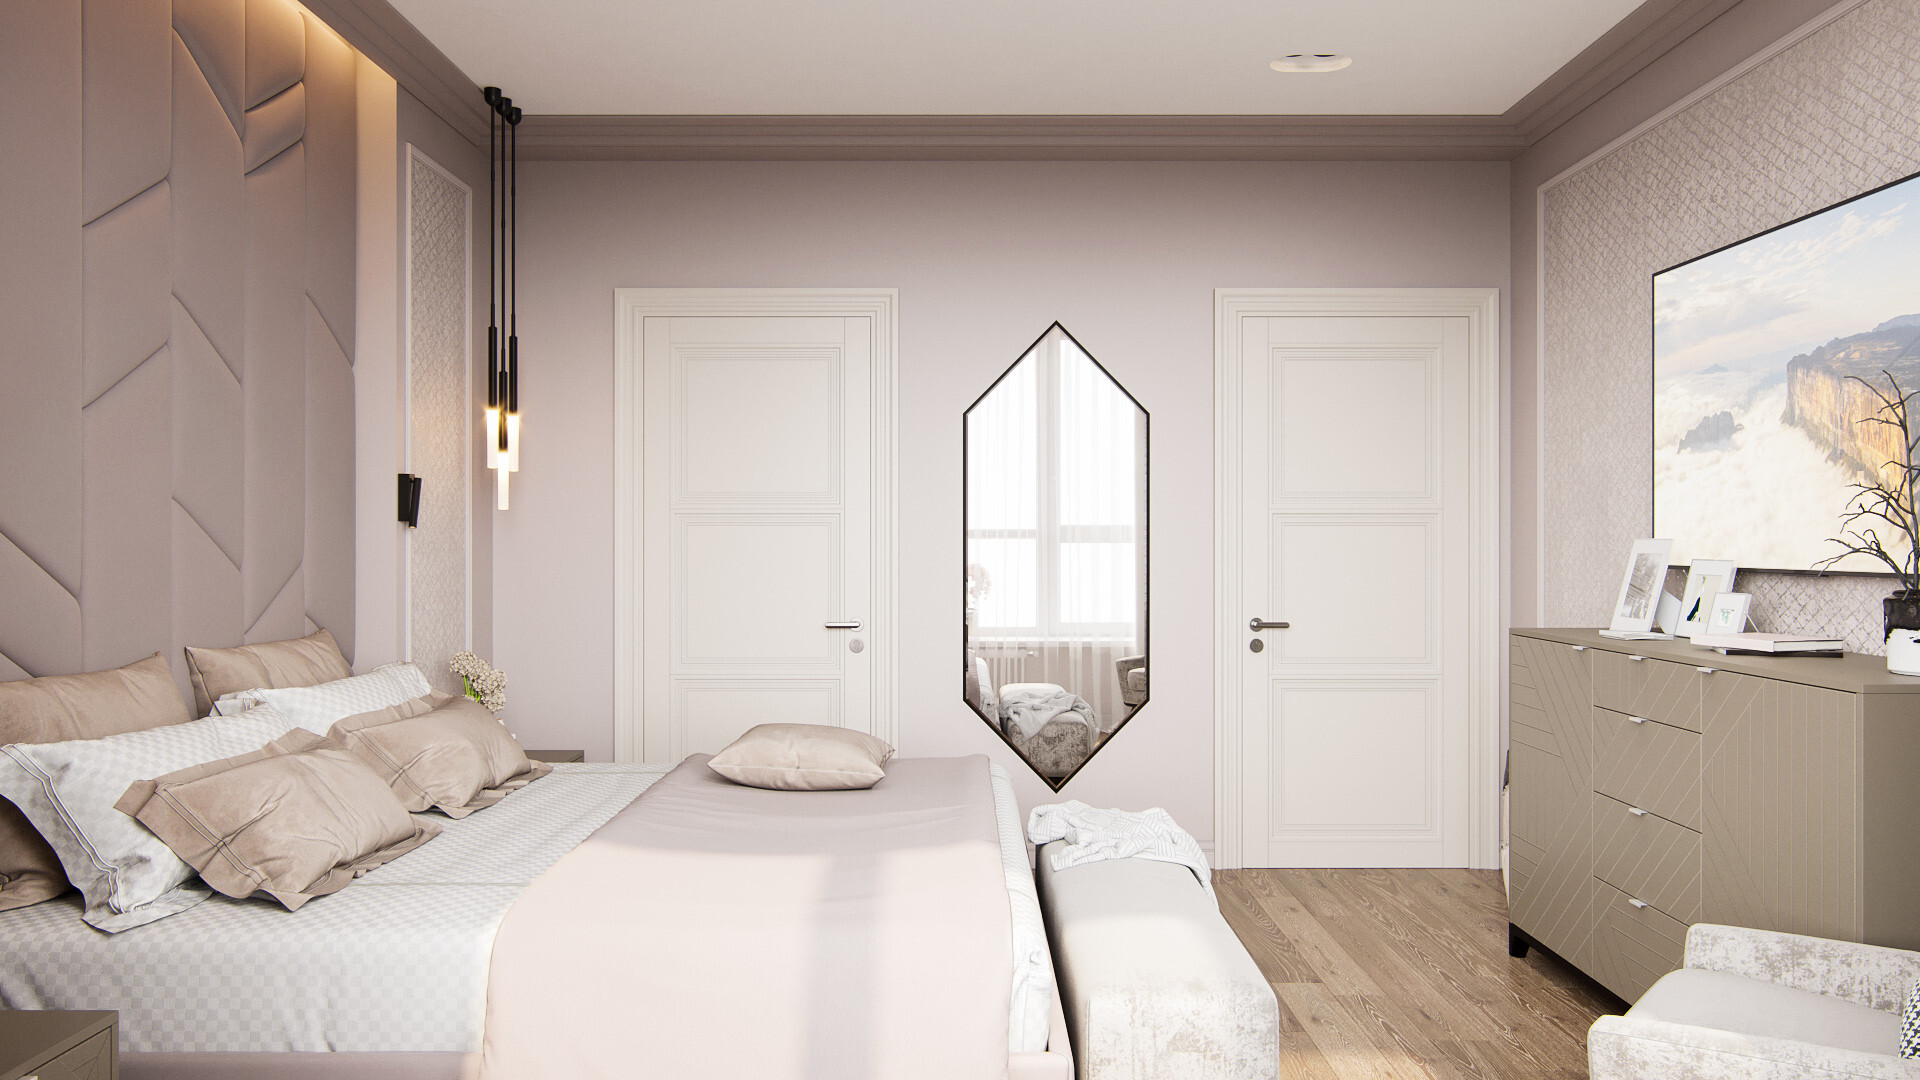 Интерьер спальни с аркой, зеркалом над диваном и зеркалом на двери в современном стиле